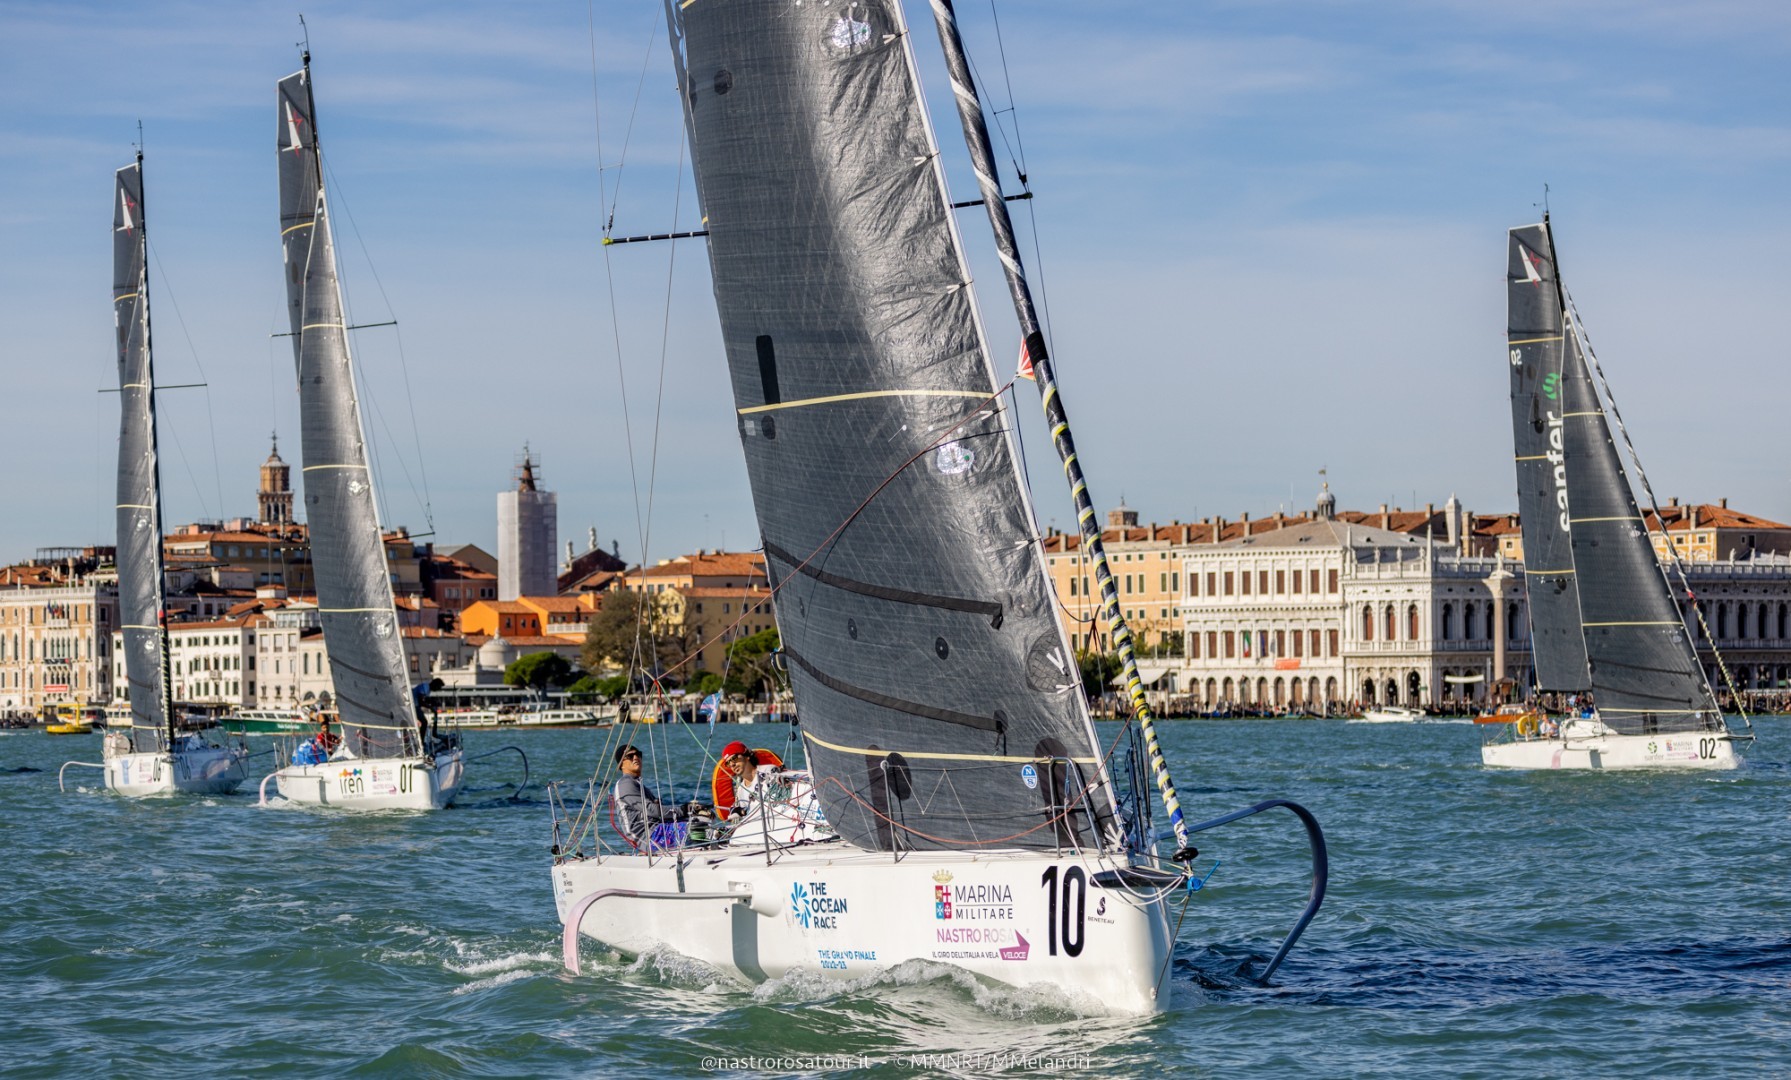 Marina Militare Nastro Rosa Tour e Royal Ocean Racing Club al lavoro per nuove opportunità nel mondo double-handed